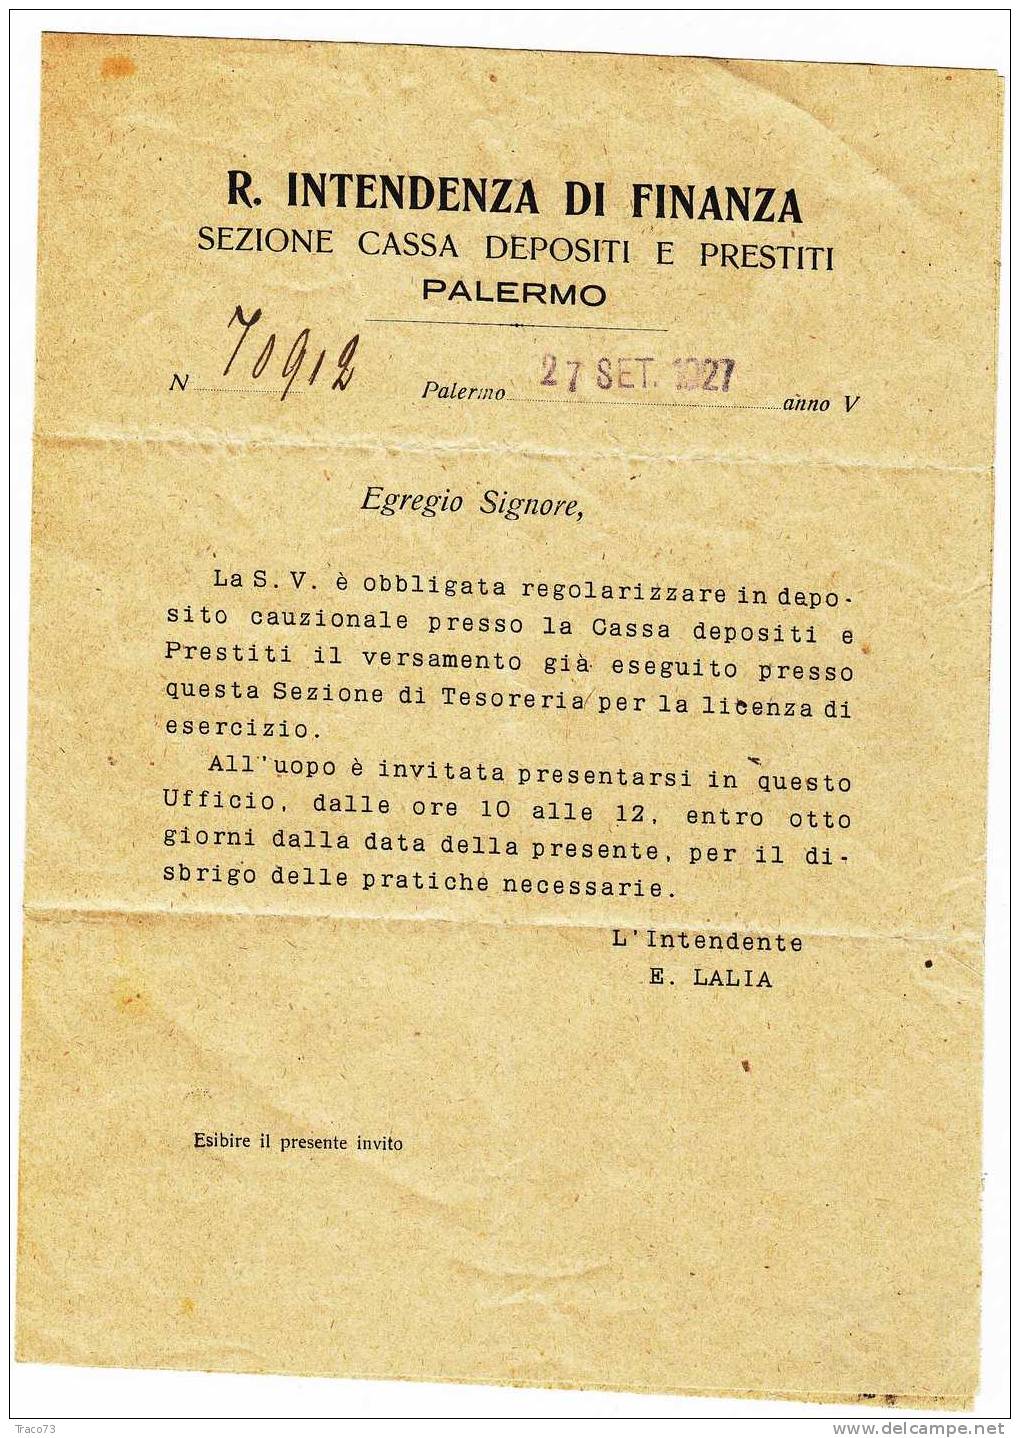 Franchigia / Palermo - (Balestrate /Trappeto) - Intendenza Di Finanza  -  30.09.1927 - Zonder Portkosten